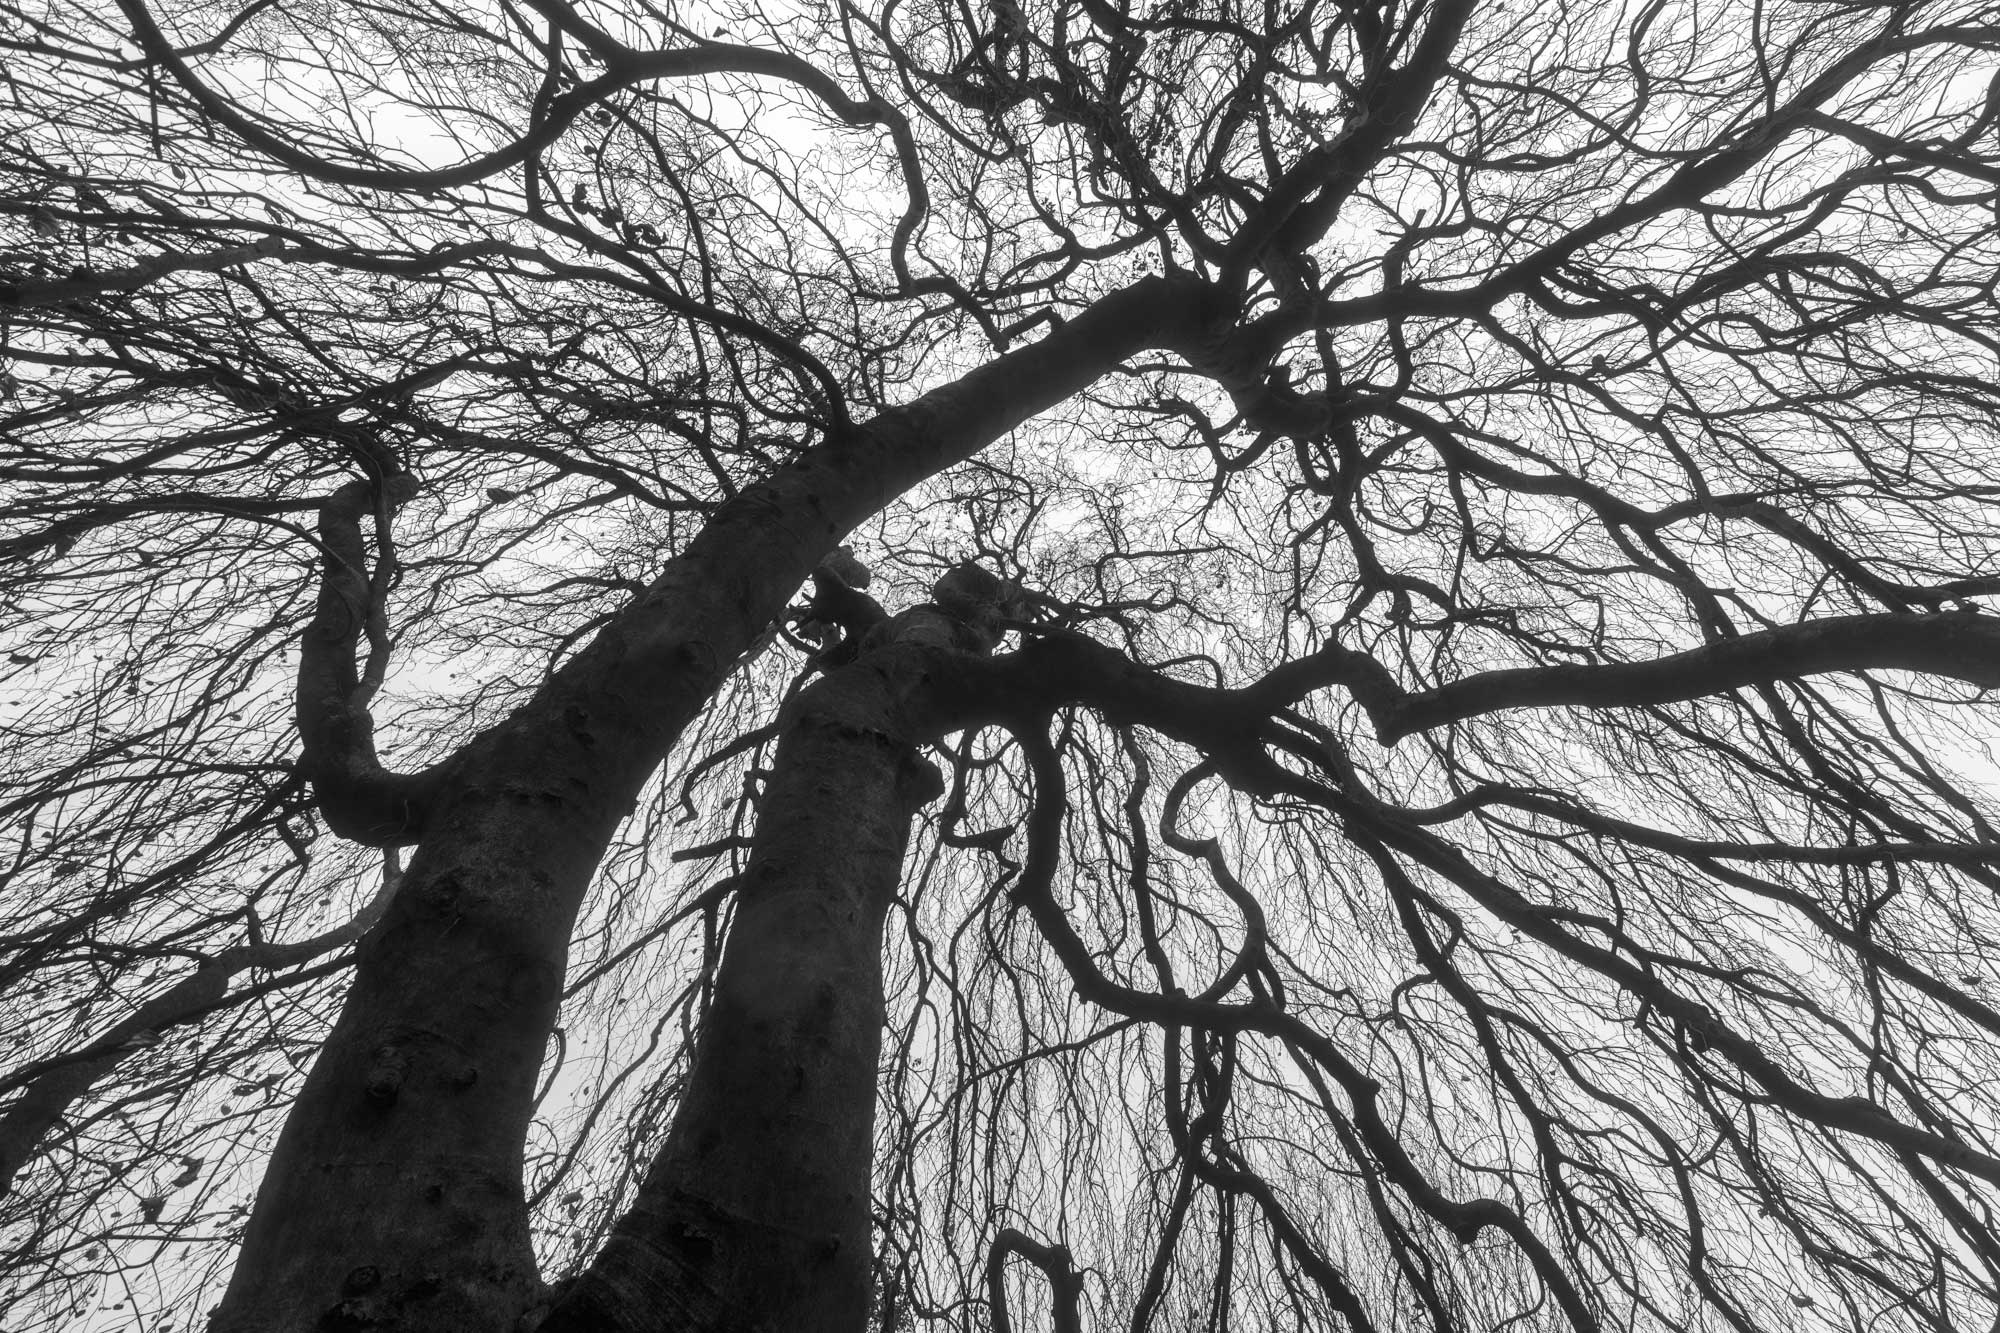 Weeping Birch tree in winter.